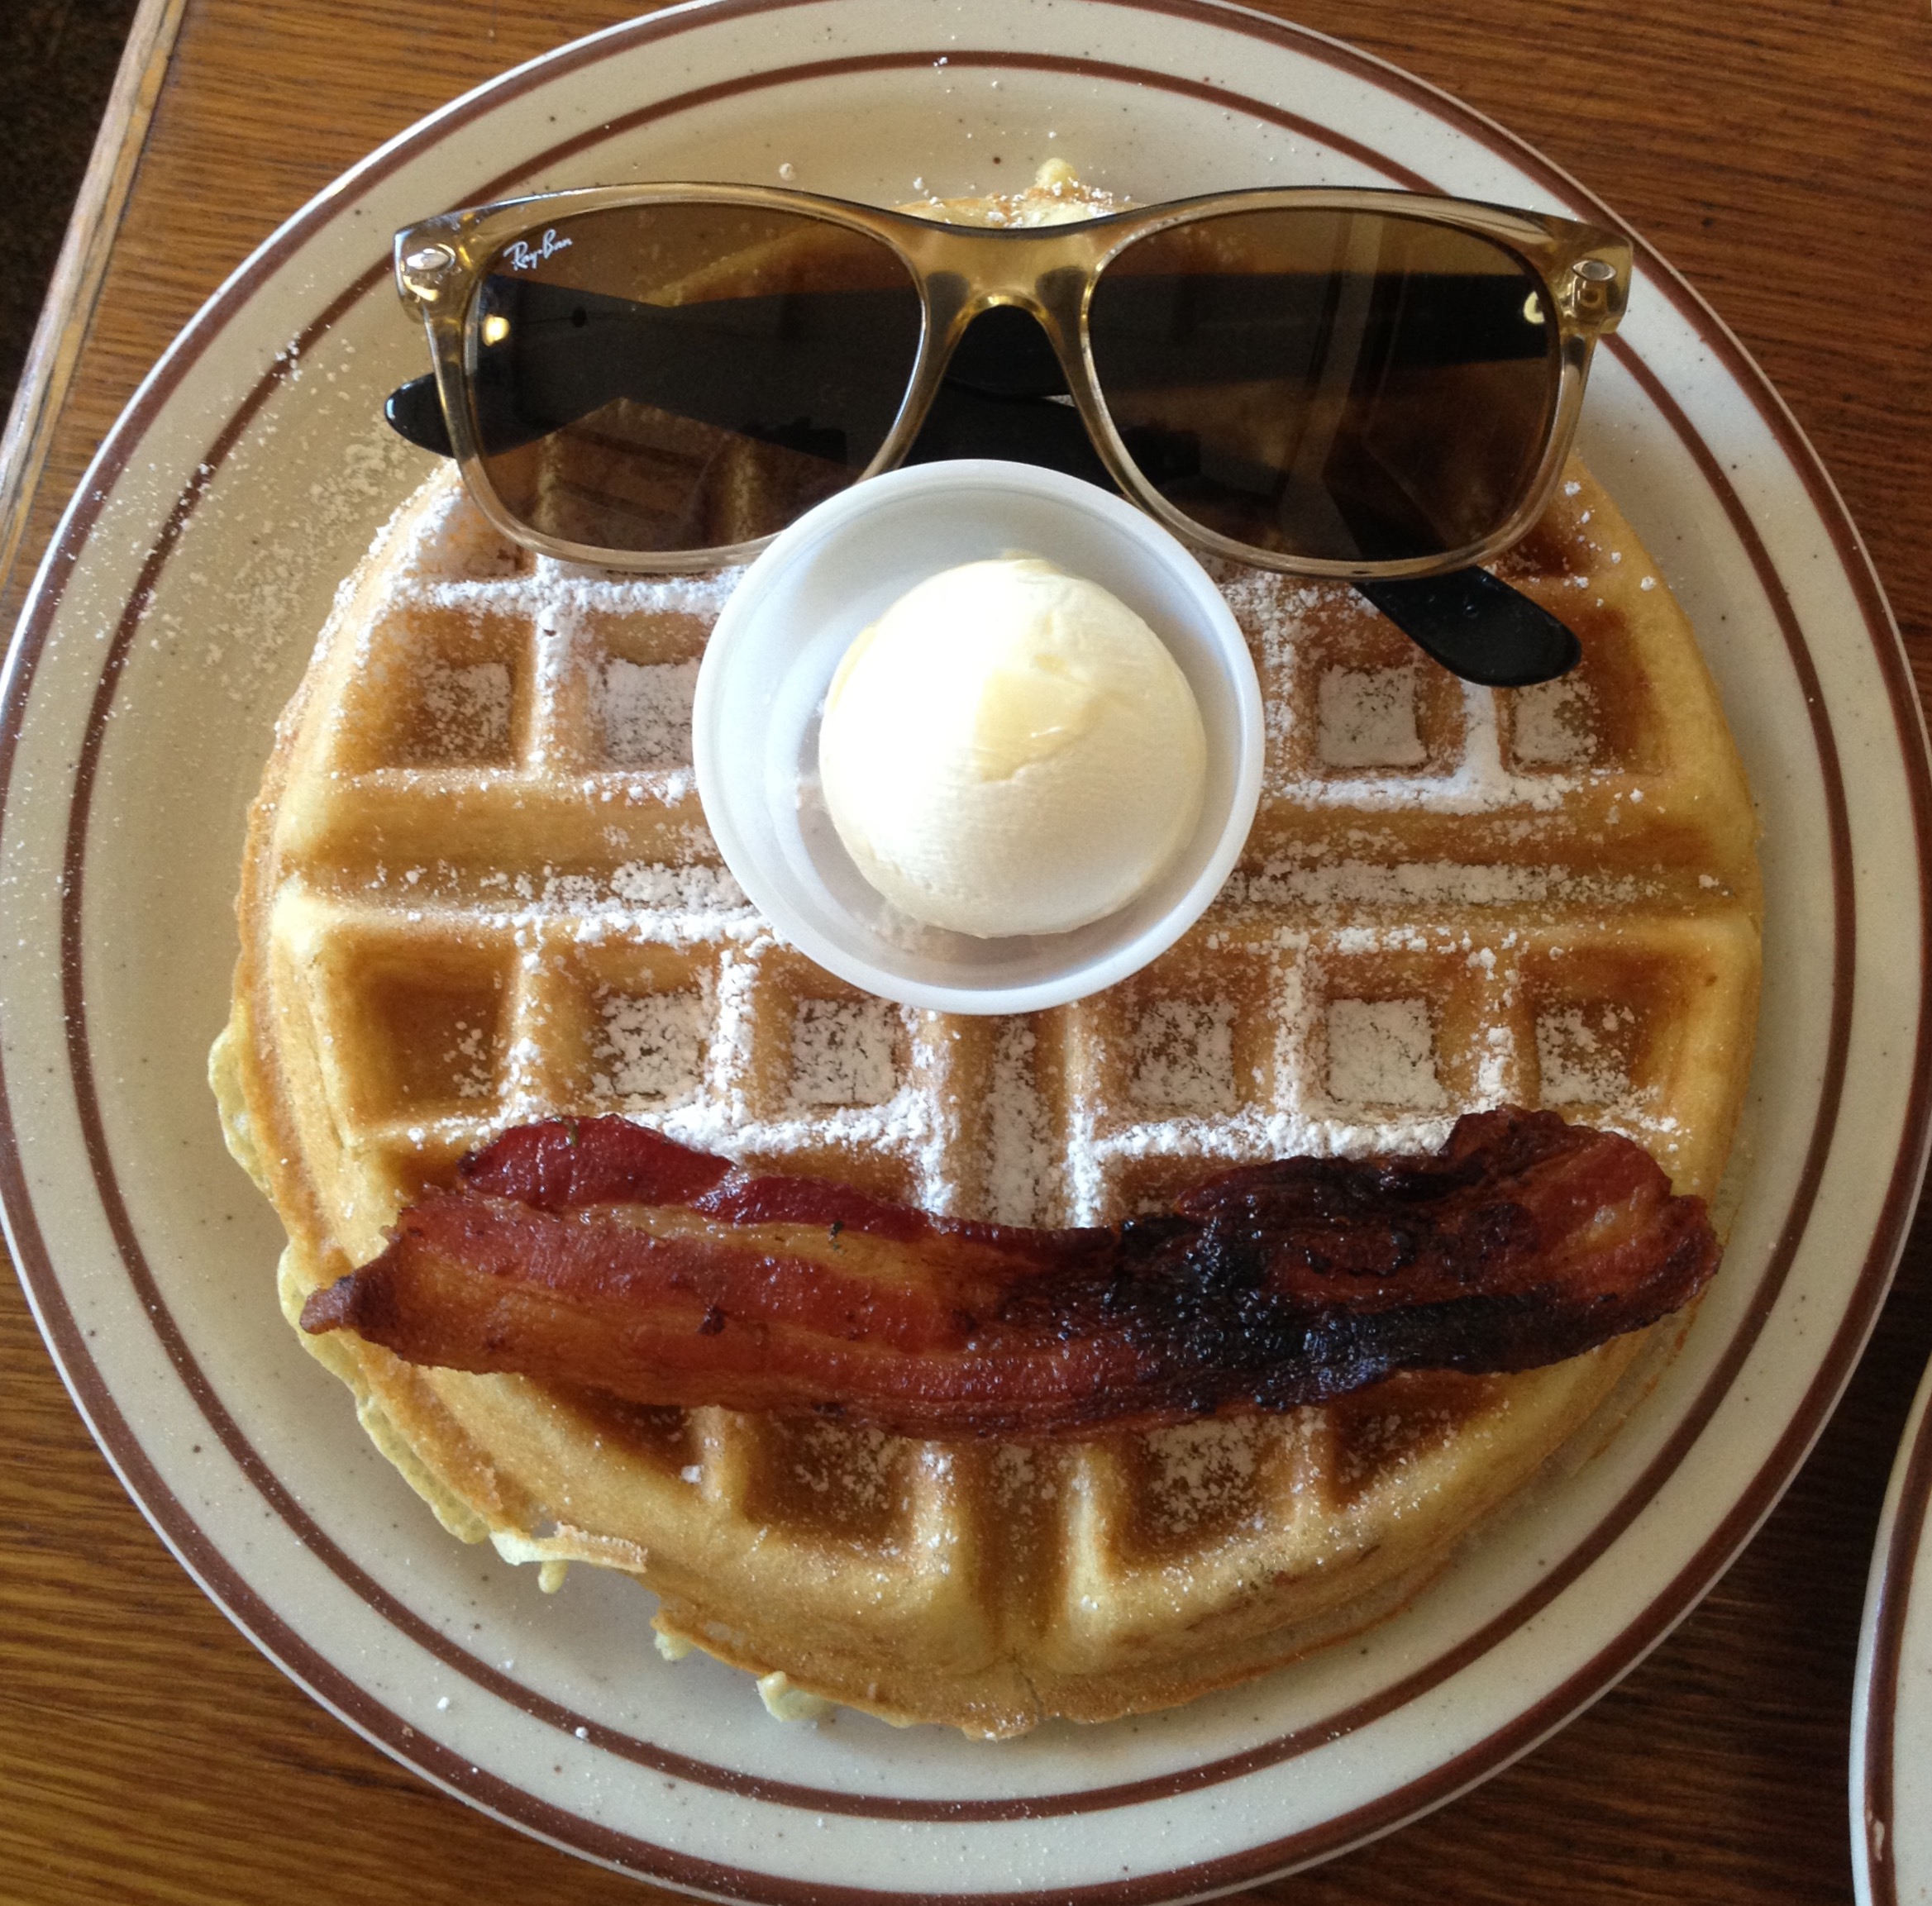 breakfast - bacon & waffles